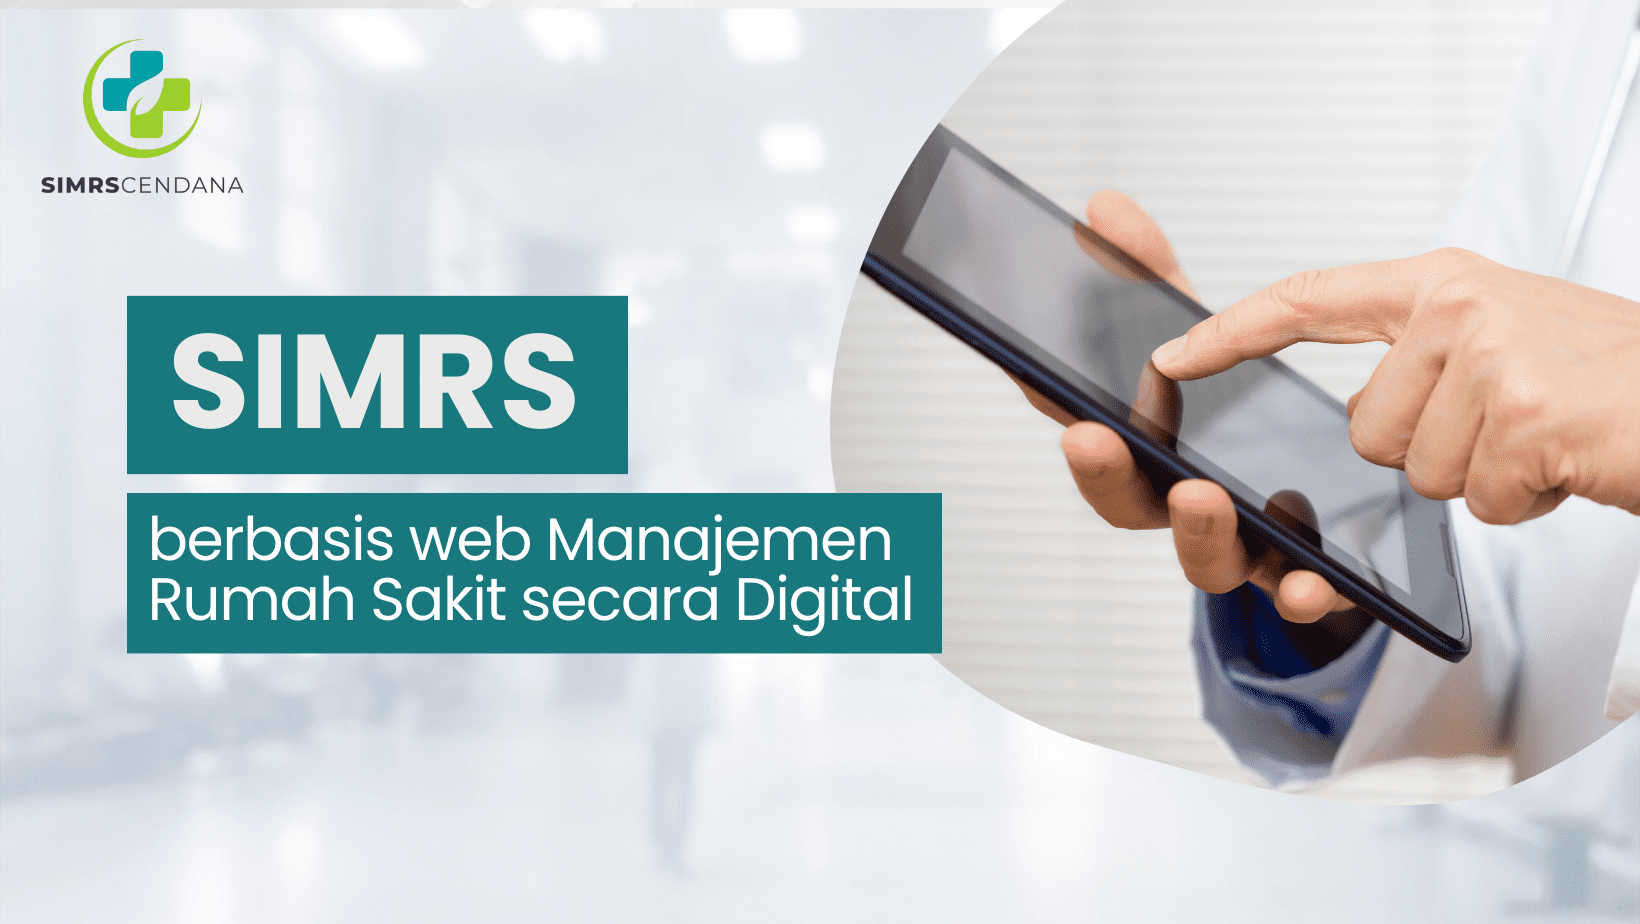 SIMRS berbasis web Manajemen Rumah Sakit Secara Digital